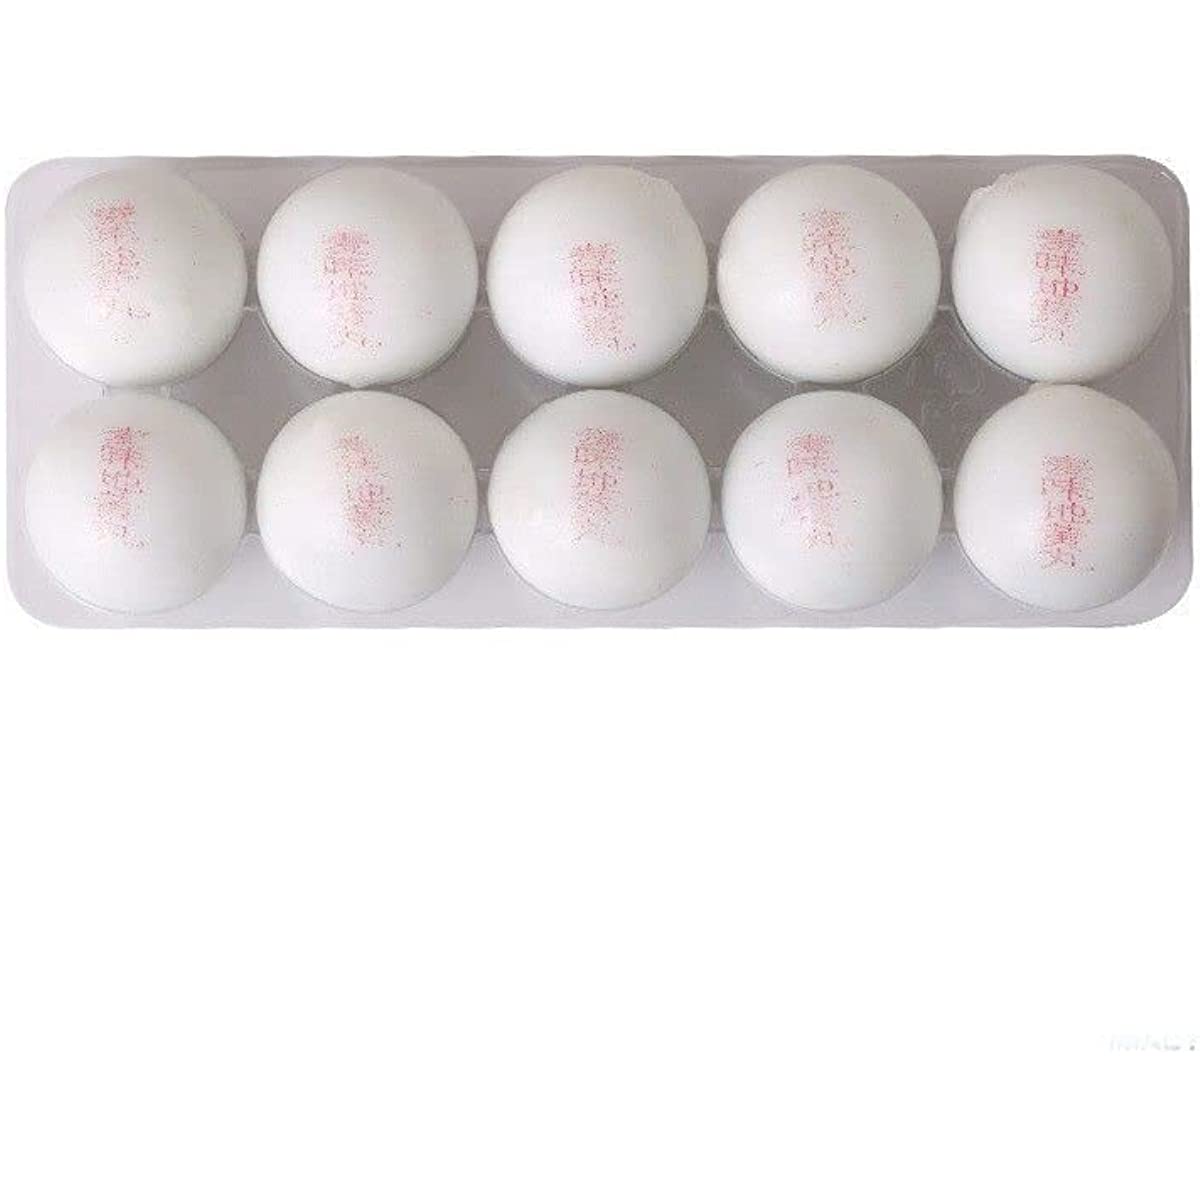 1 Box,Tongrentang Maiwei DihuangWan 9g*10 Pills / Box  麦味地黄丸